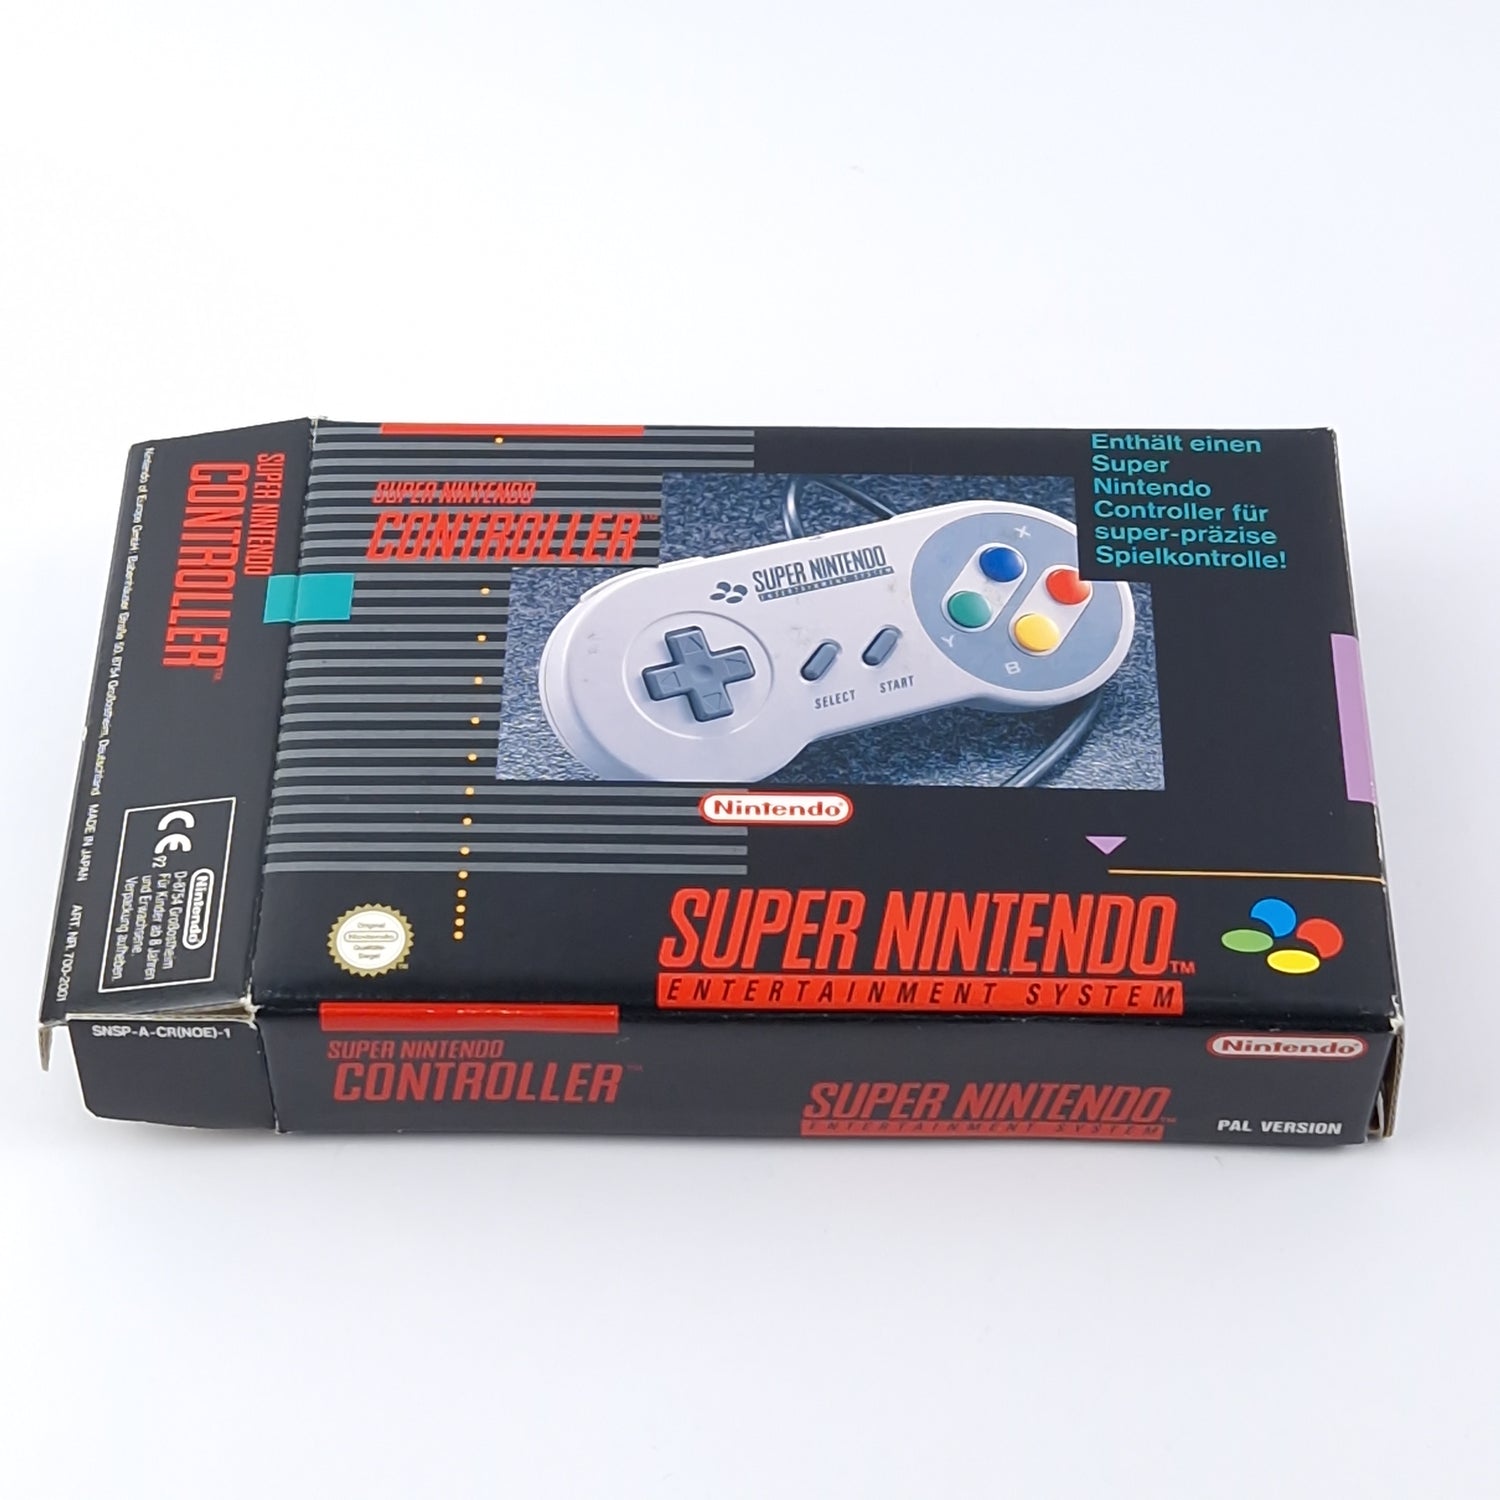 Original Super Nintendo Controller in original packaging - SNES Gamepad PAL